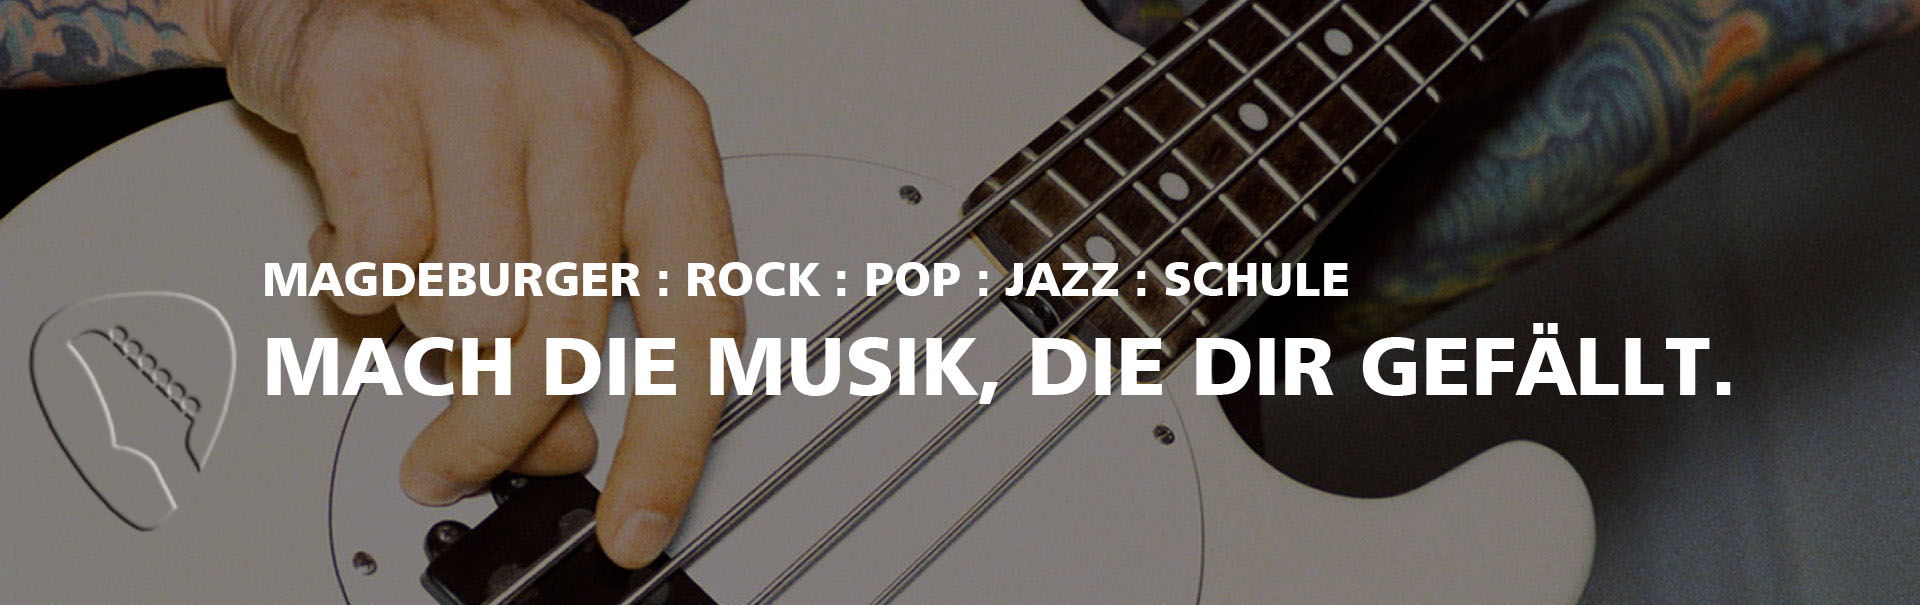 //www.musikschulemagdeburg.de/wp-content/uploads/2020/01/musikschule_md2.jpg